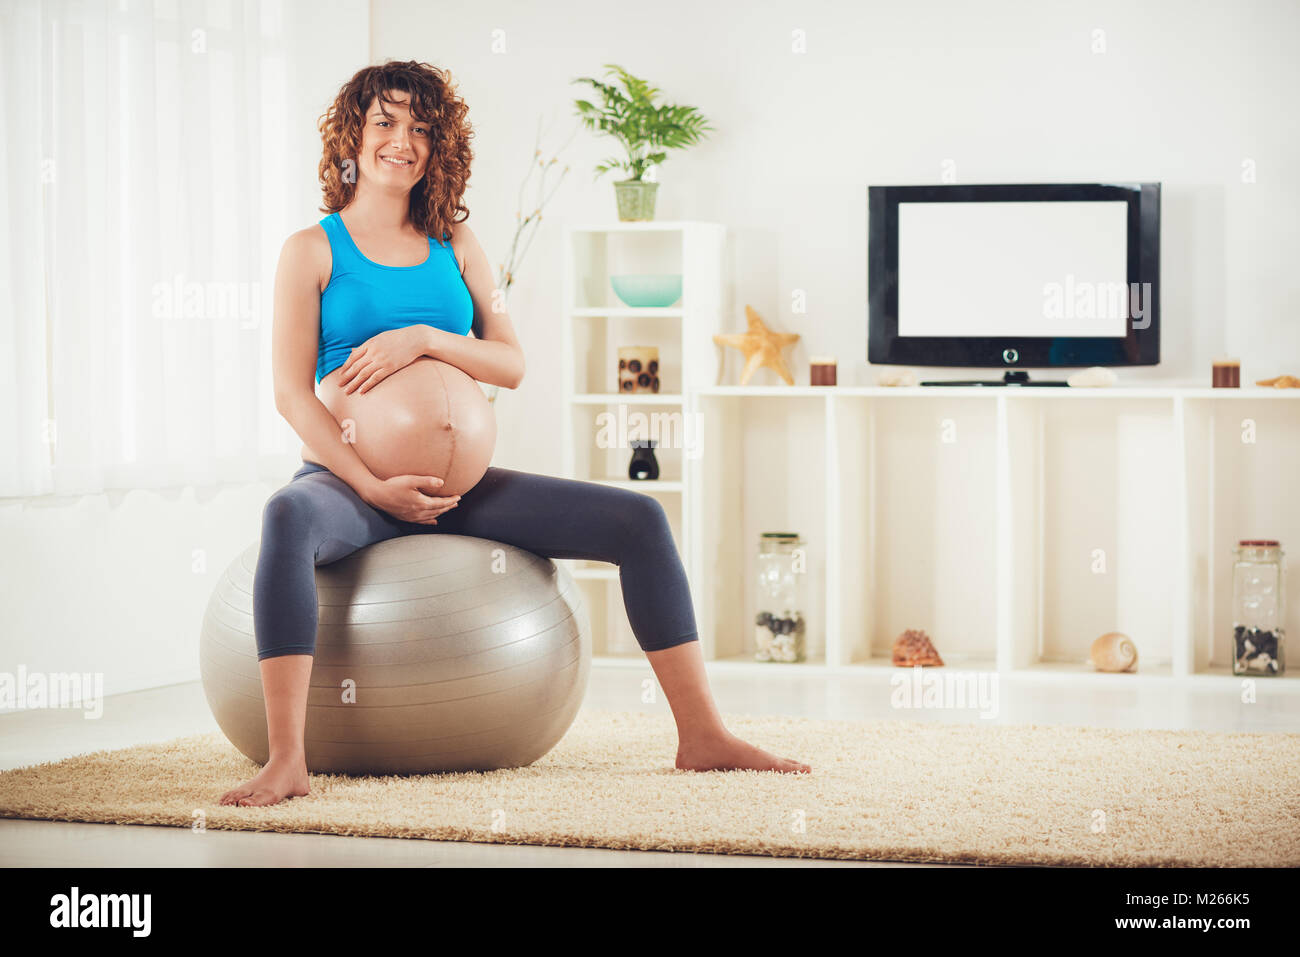 Schöne junge schwangere Frau sitzt auf einem Fitness Ball und entspannen im Hause. Stockfoto